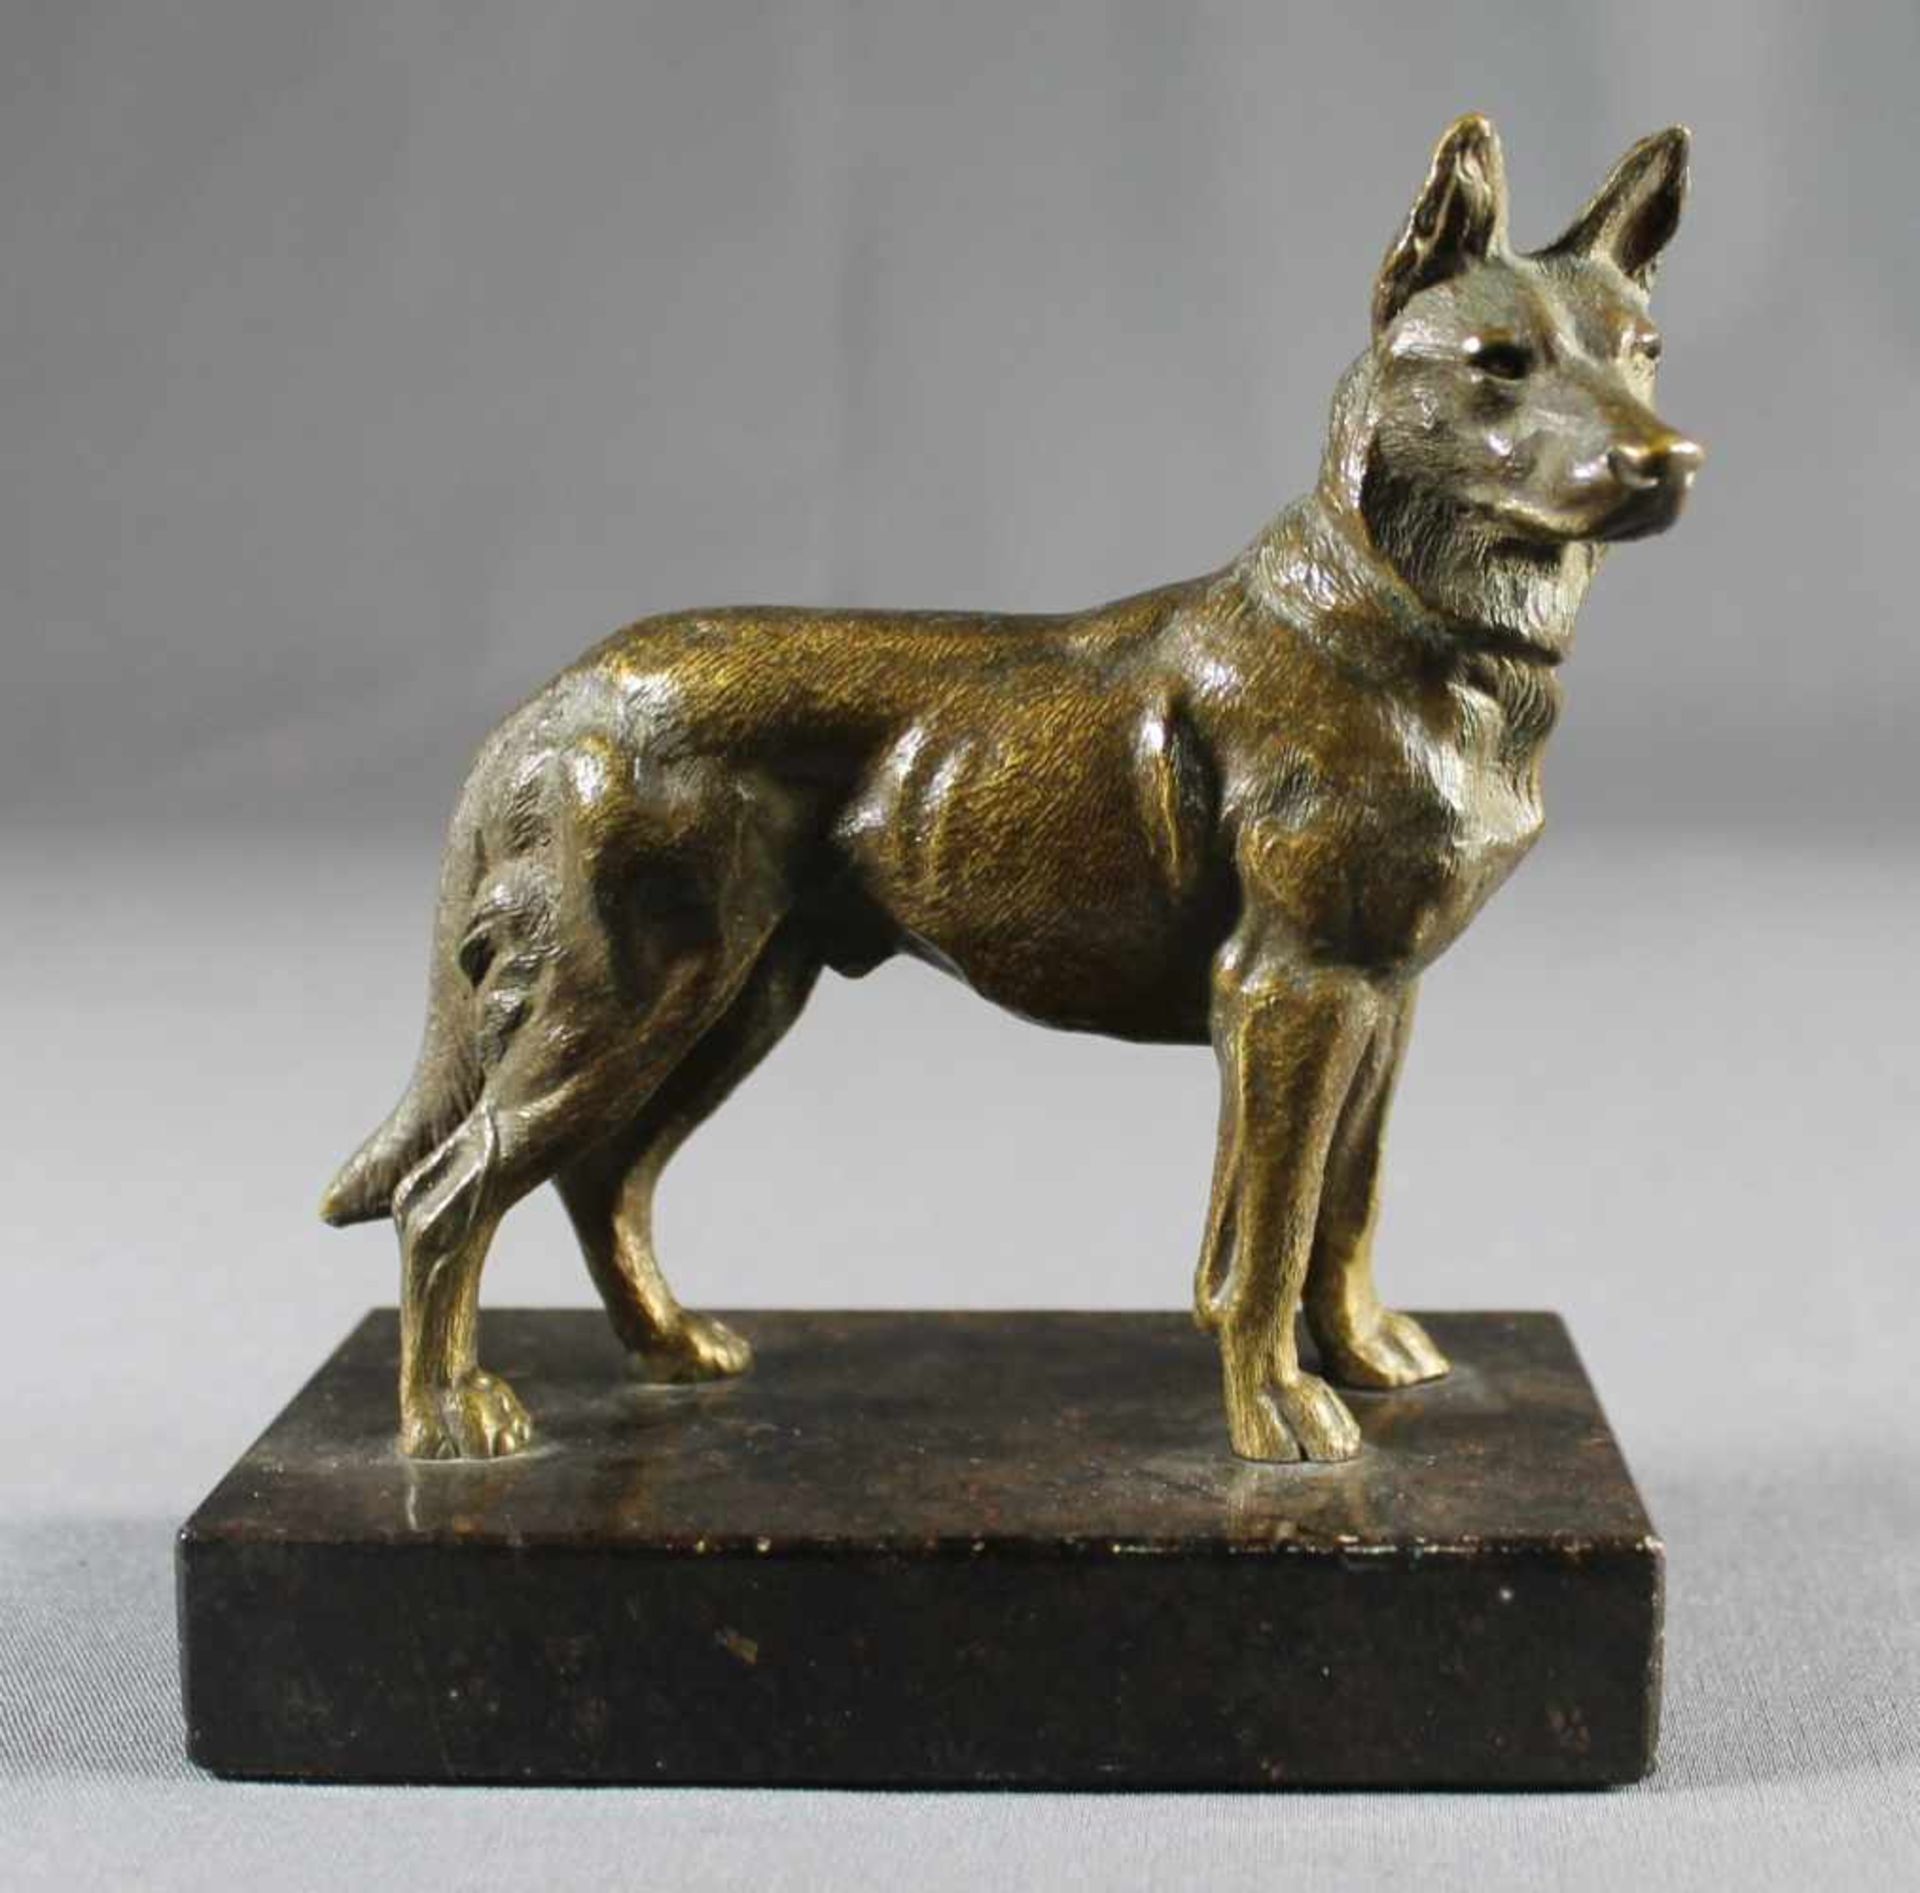 1 kleine Bronzefigur auf schwarzem Marmorsockel "Schäferhund", keine Signatur erkennbar, Sockel